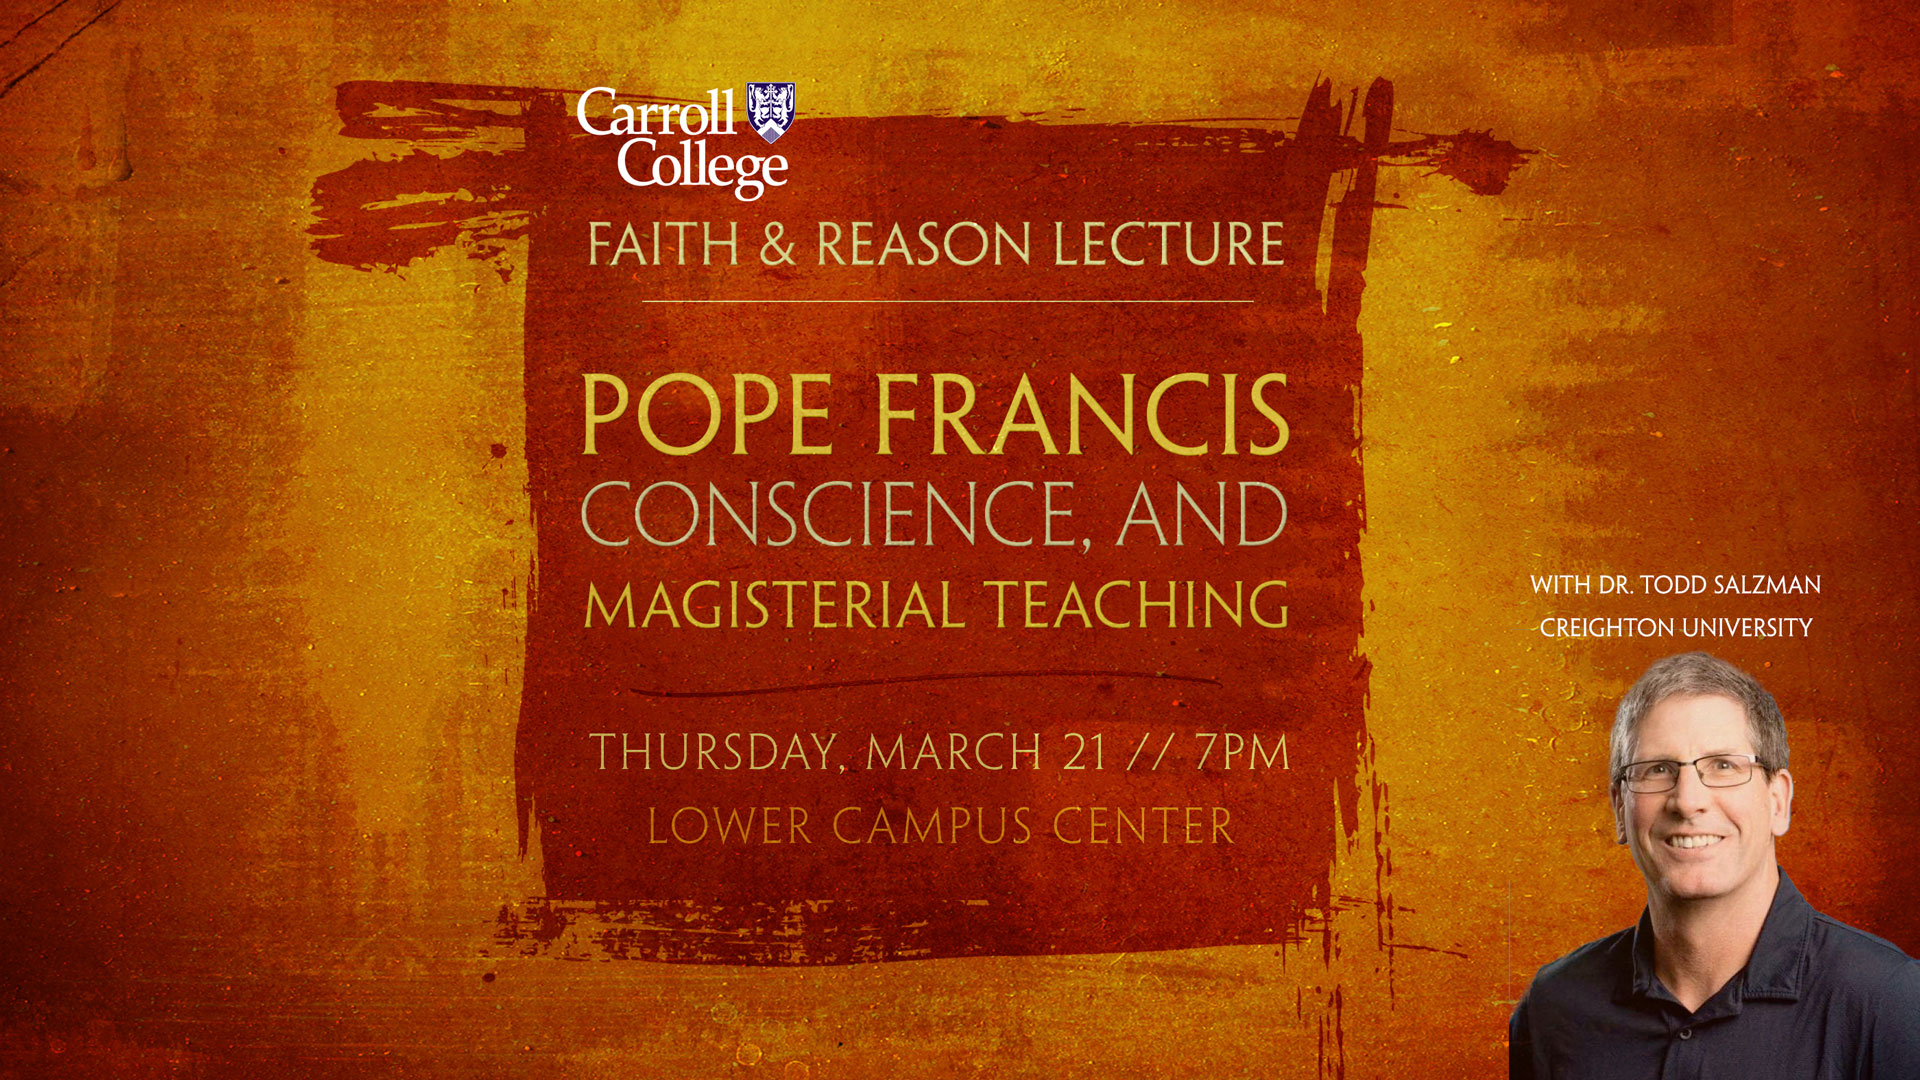 Annual Faith & Reason Lecture